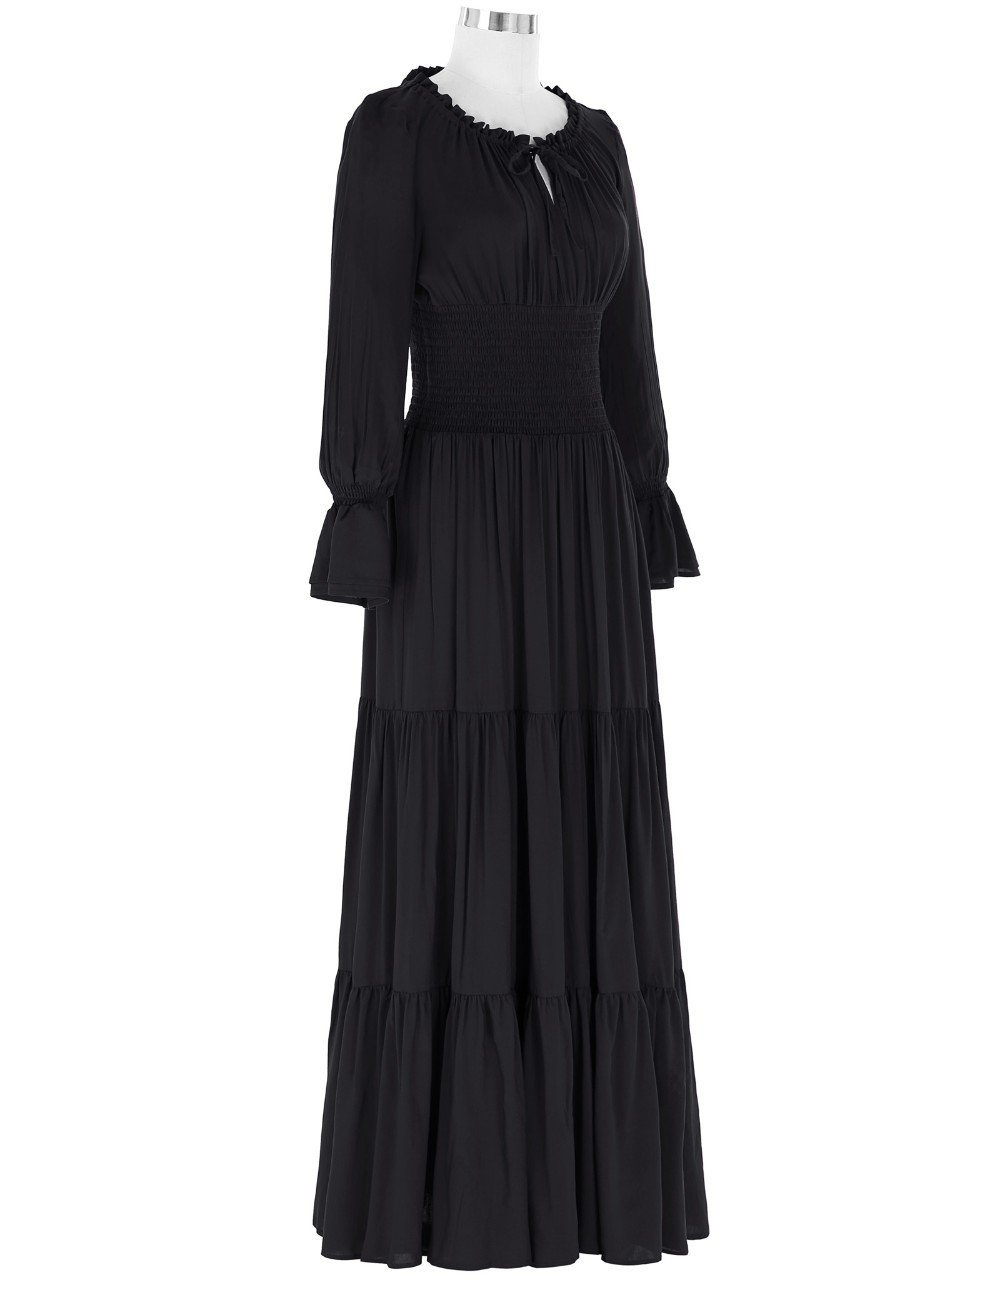 Long Sleeve Floor Length Dress - Go Steampunk